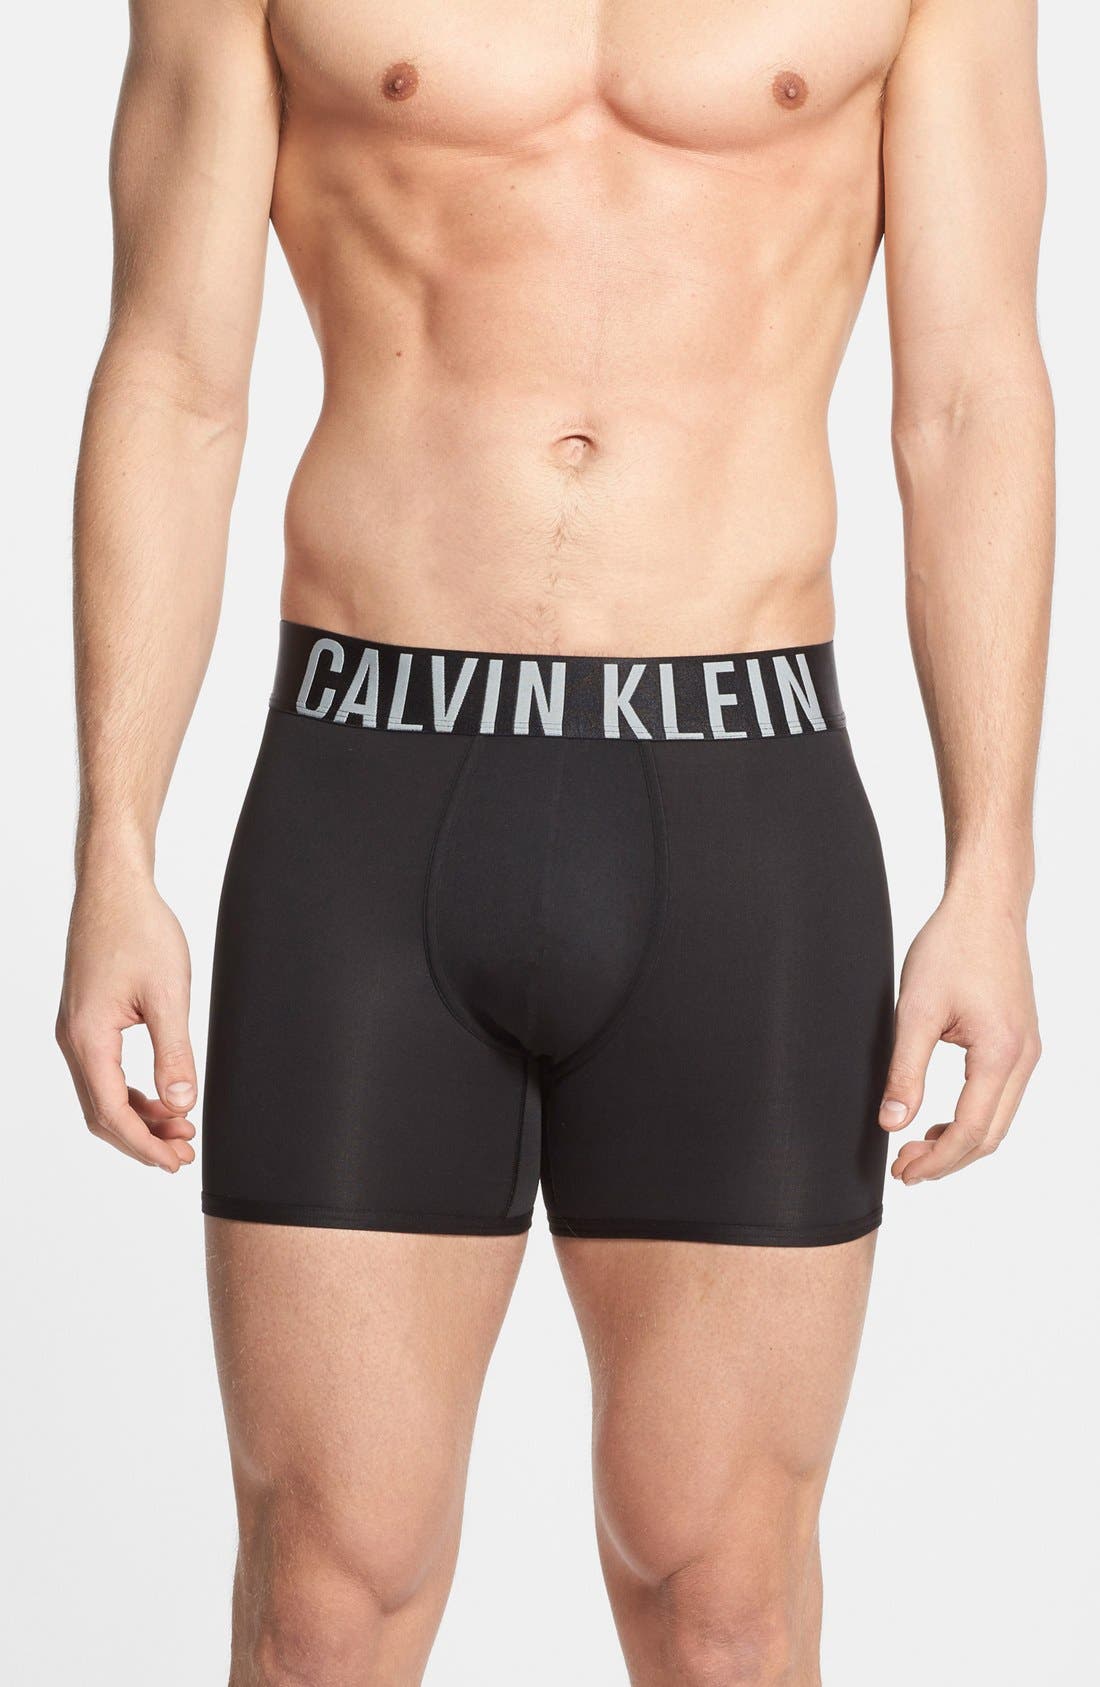 calvin klein intense power underwear